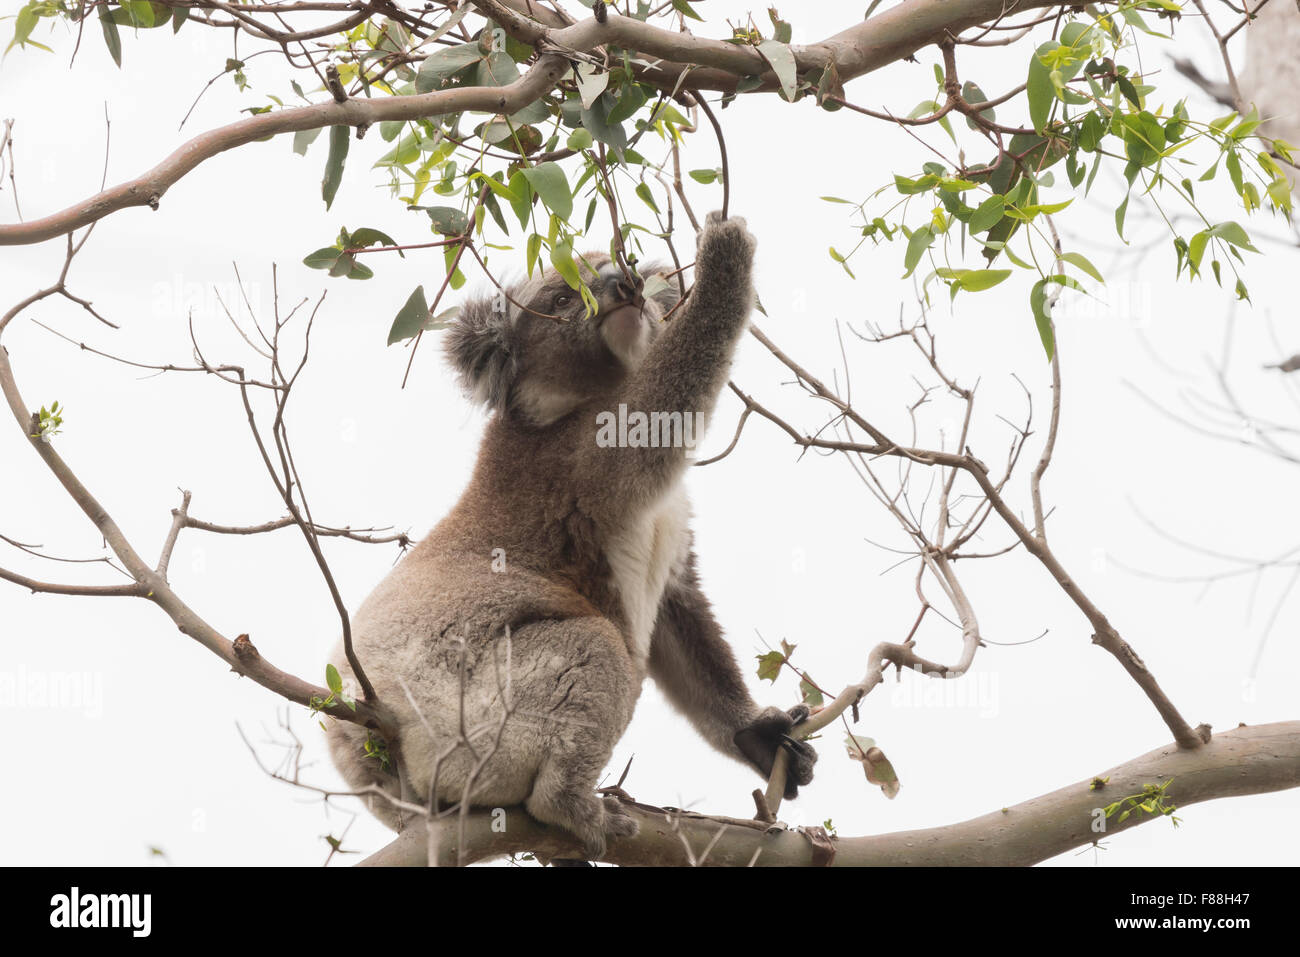 La cueillette des feuilles d'eucalyptus Koala à manger Banque D'Images